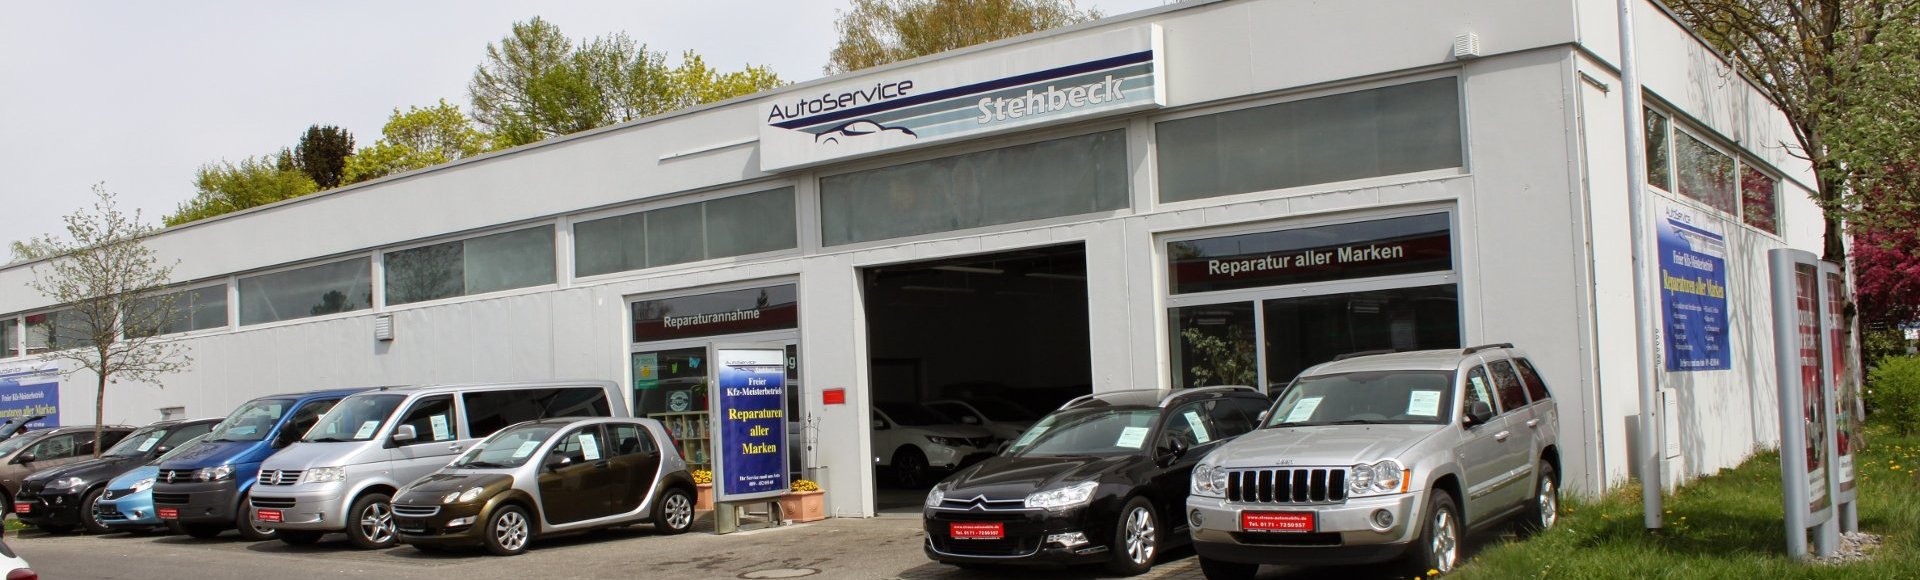 Autoservice Stehbeck – Autowerkstatt im Münchner Osten in Trudering